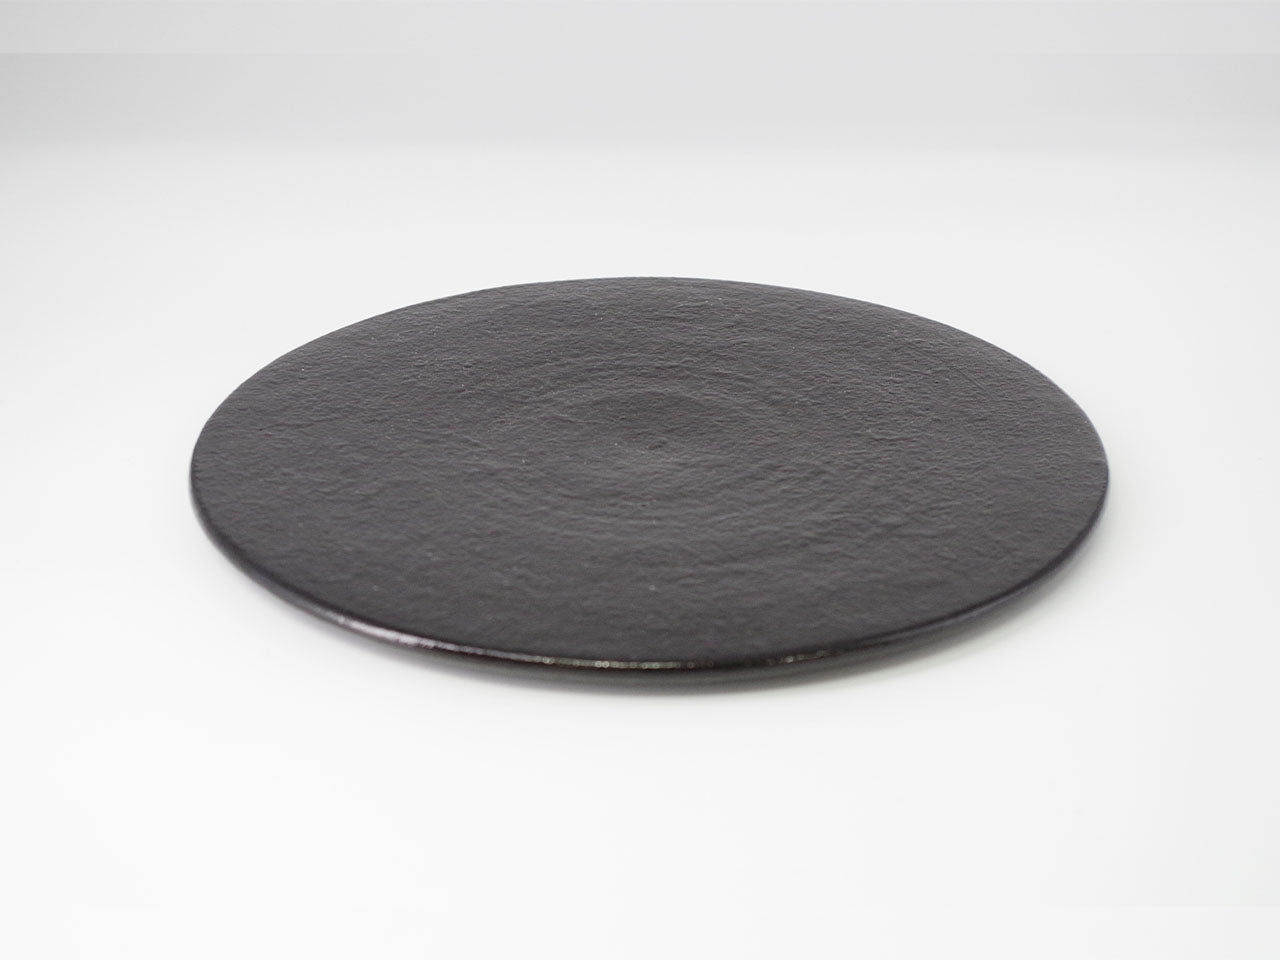 Table ware, Flat plate, Multicolored overglaze, Black overglaze paint 8-sun size - Ken Shoji, Kasama ware,Ceramics